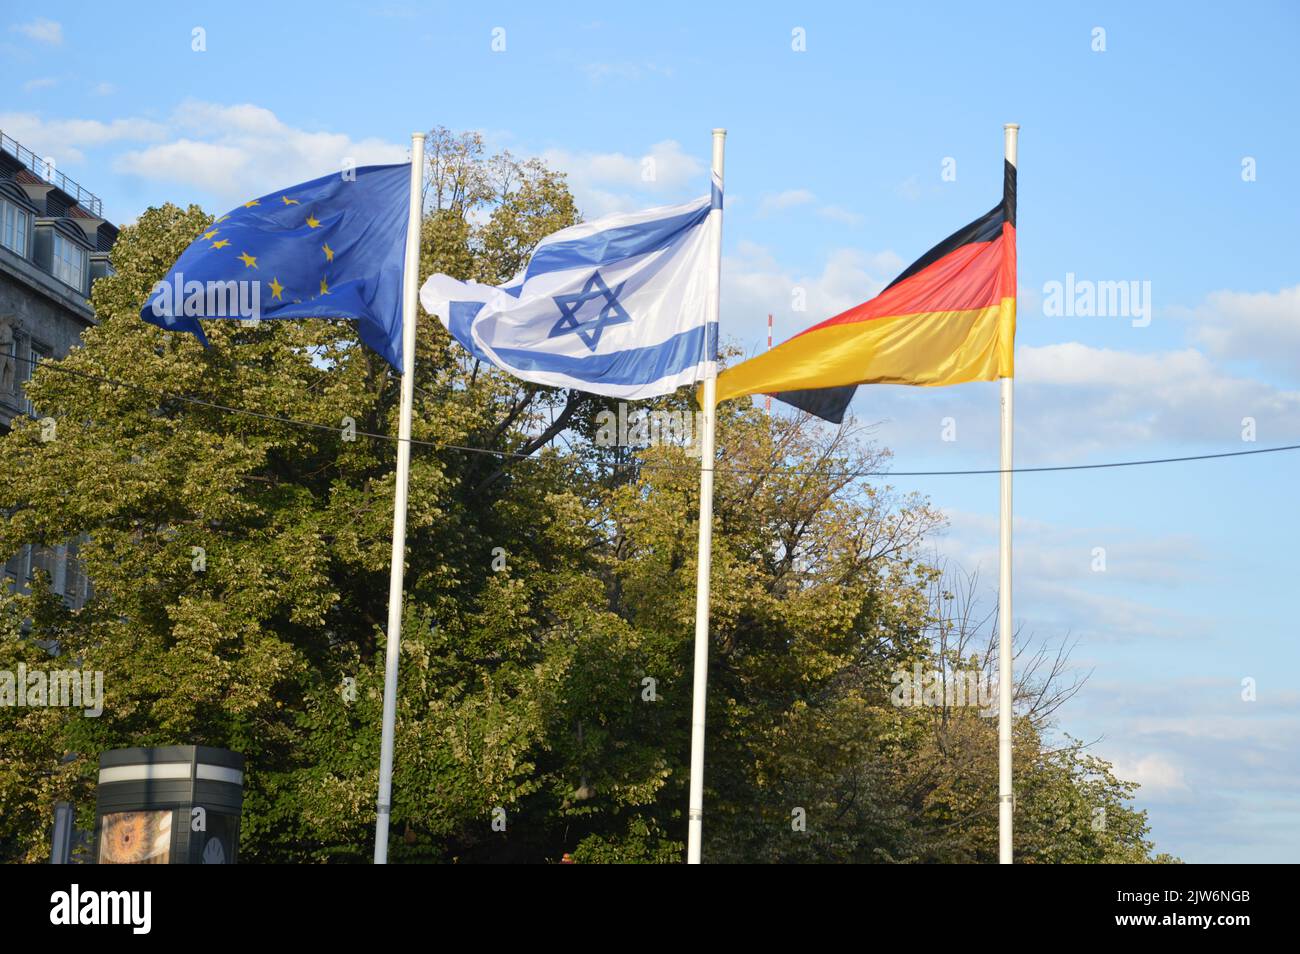 Berlino, Germania - 3 settembre 2022 - bandiere israeliane che volano nel centro di Berlino a causa della visita ufficiale del presidente di Israele Isaac Herzog in Germania. (Foto di Markku Rainer Peltonen) Foto Stock